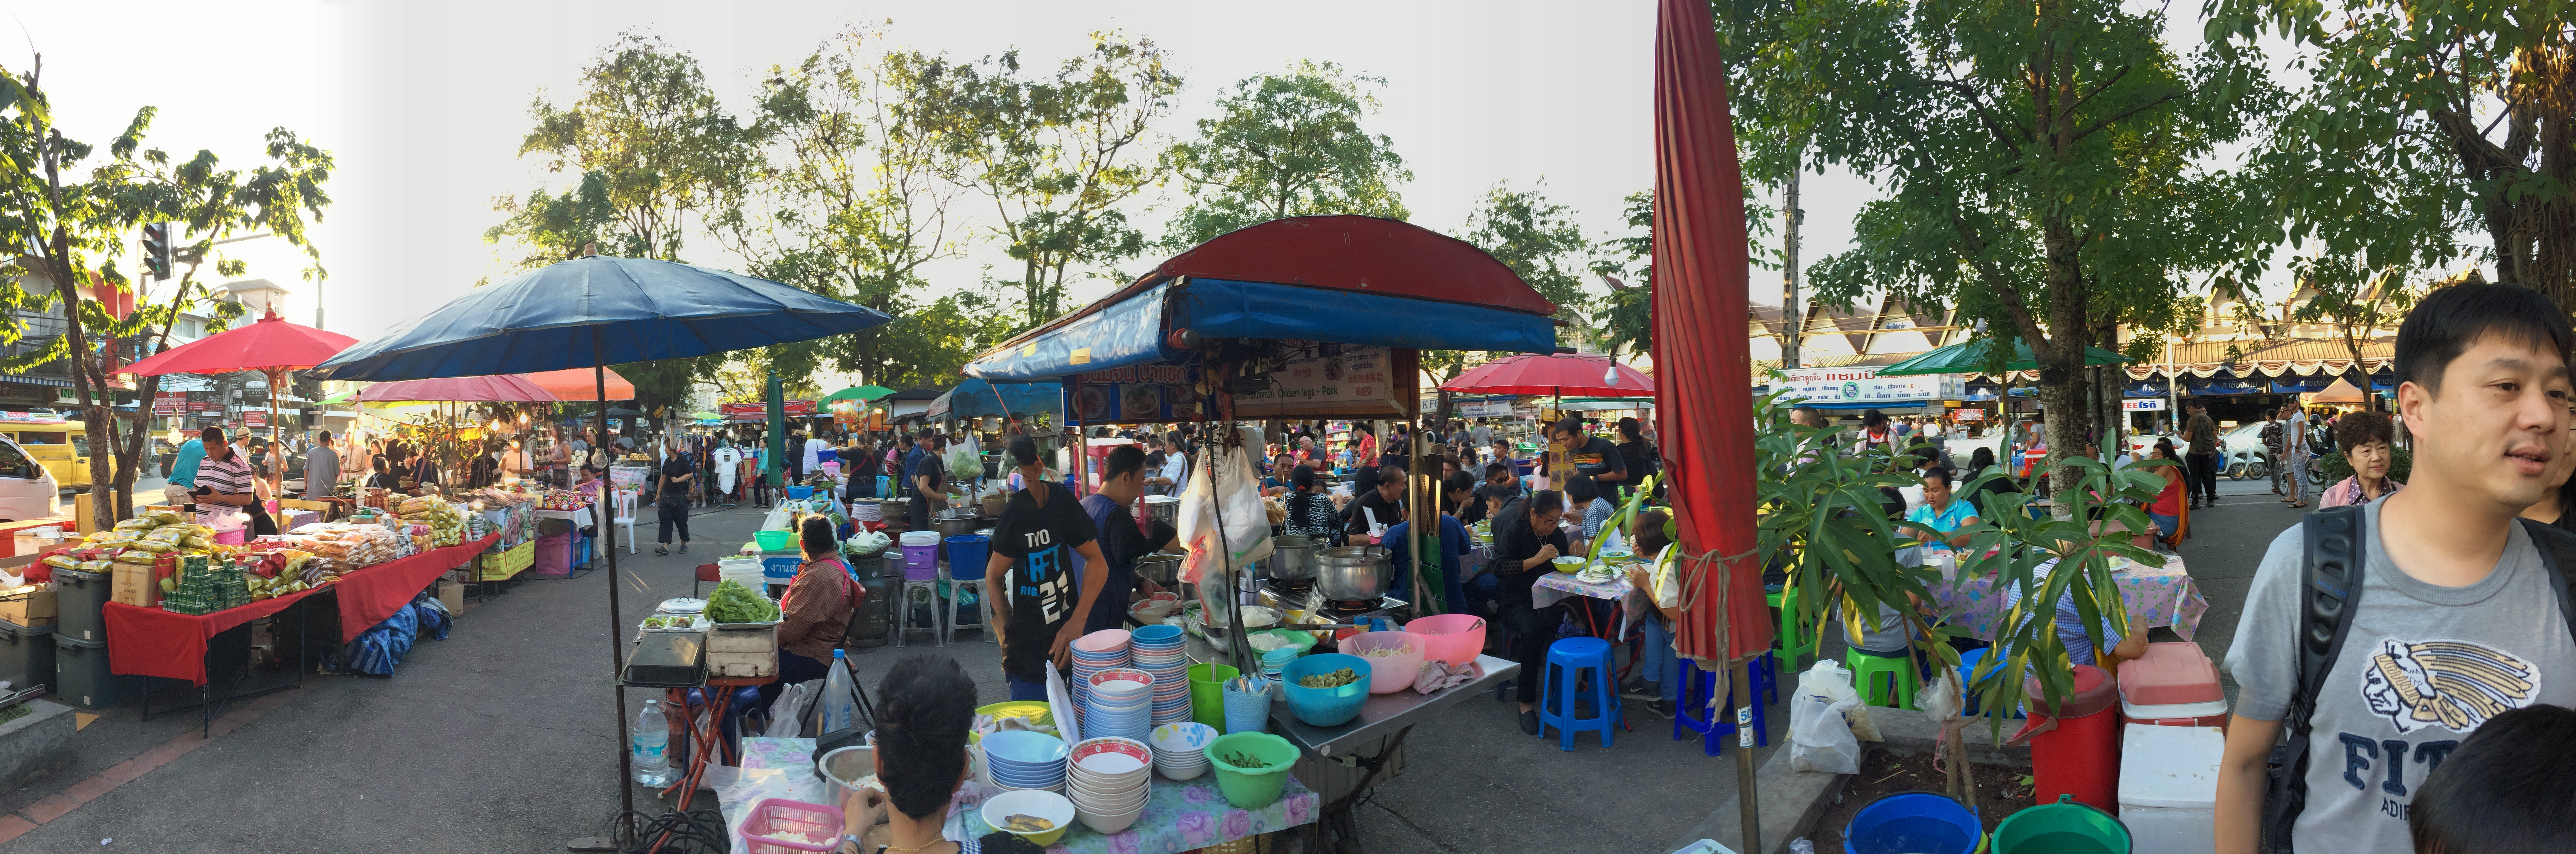 saturday_market_chiang_mai.jpg